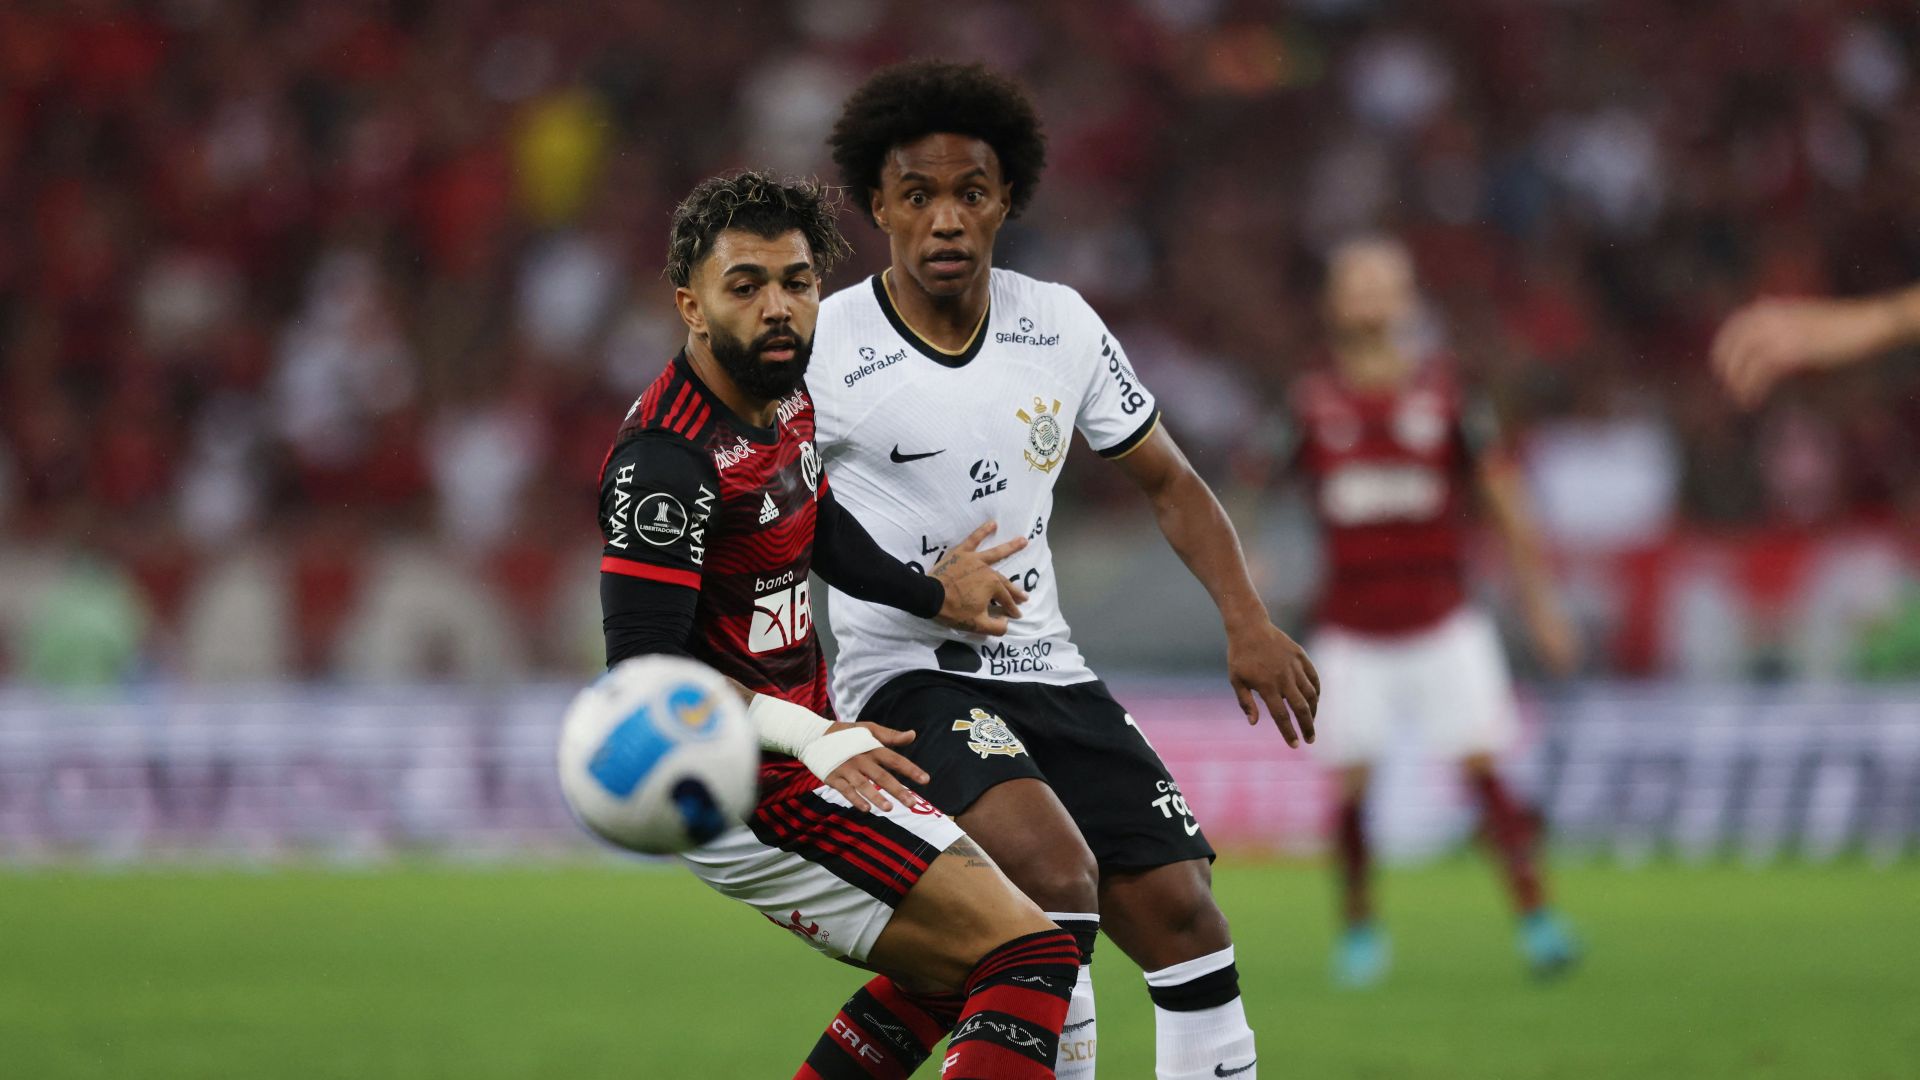 Flamengo - Corinthians EN VIVO Ver ESPN HOY ‘Mengao’ gana 1-0 por Copa Libertadores, con gol de Pedro